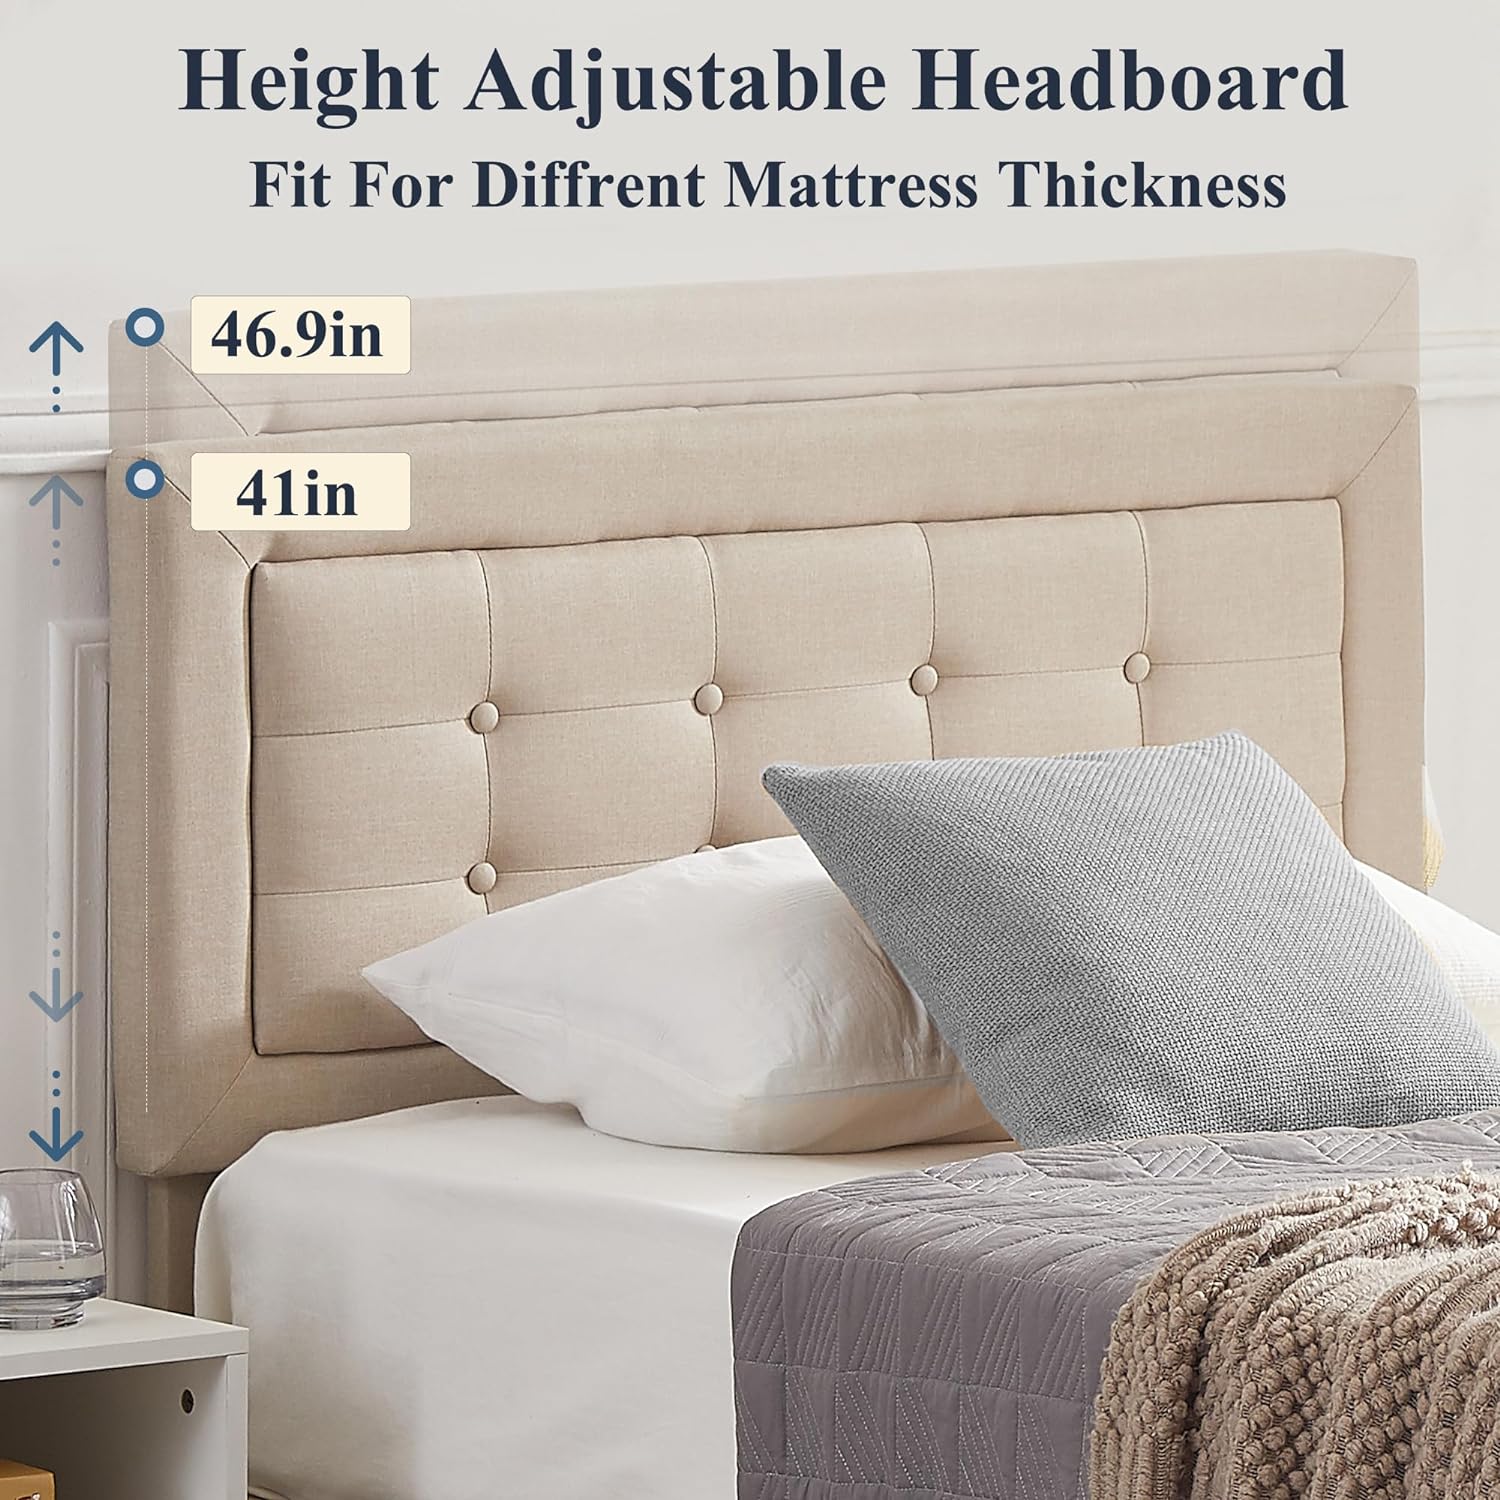 VECELO Upholstered Platform Bed Frame with Height Adjustable Headboard